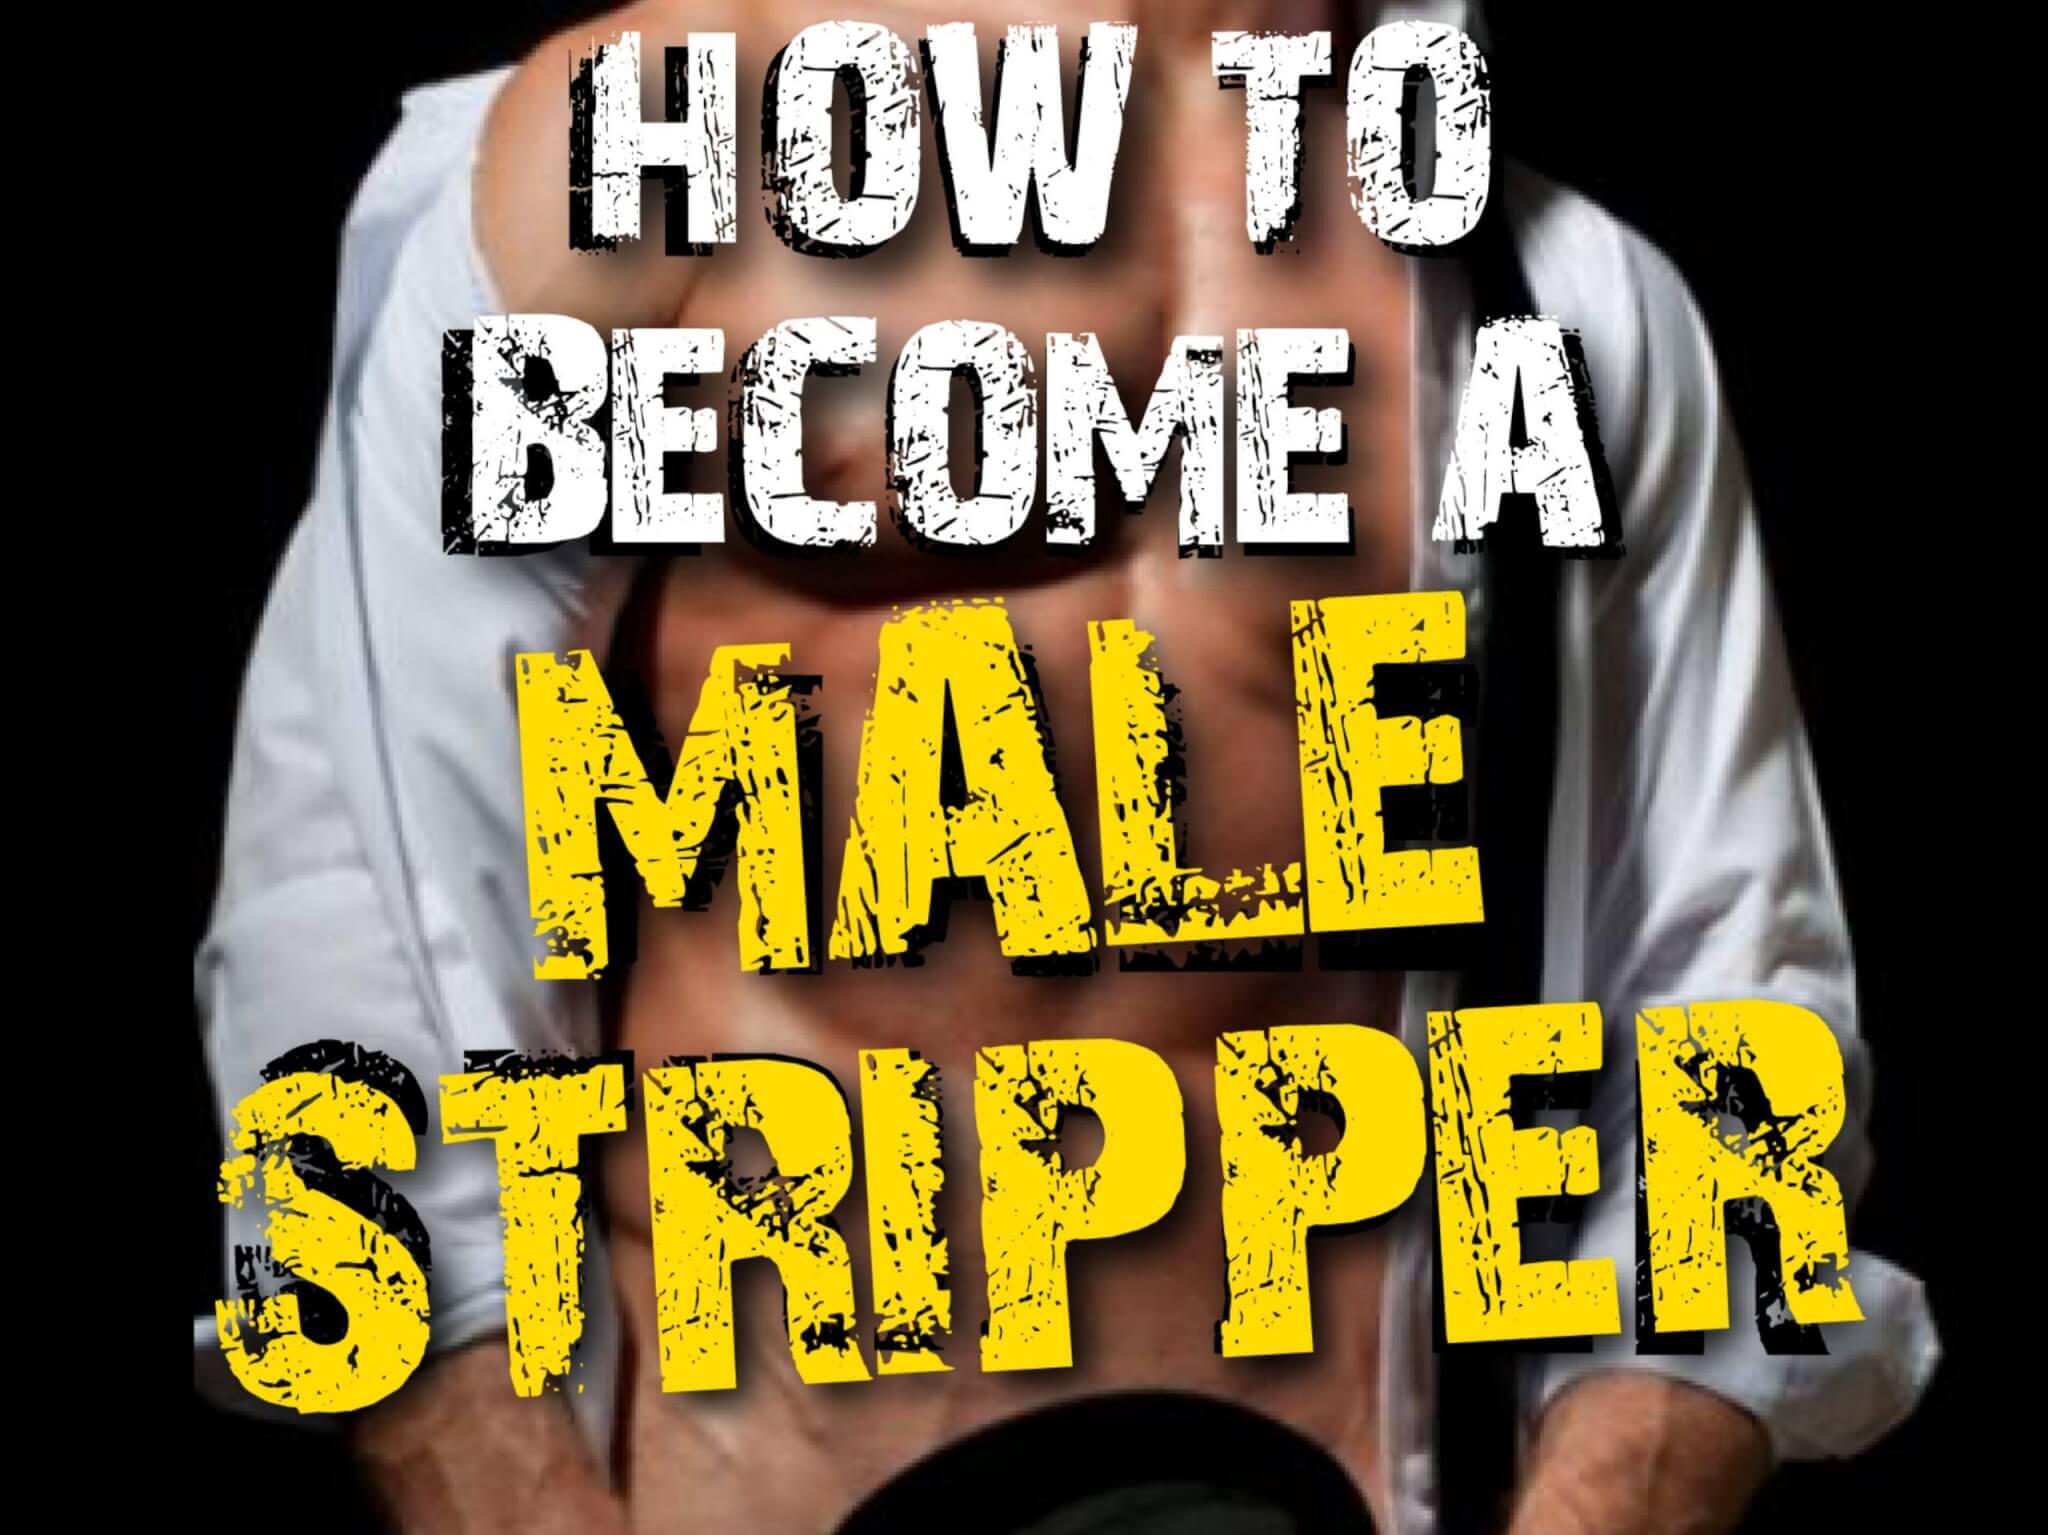 male stripper